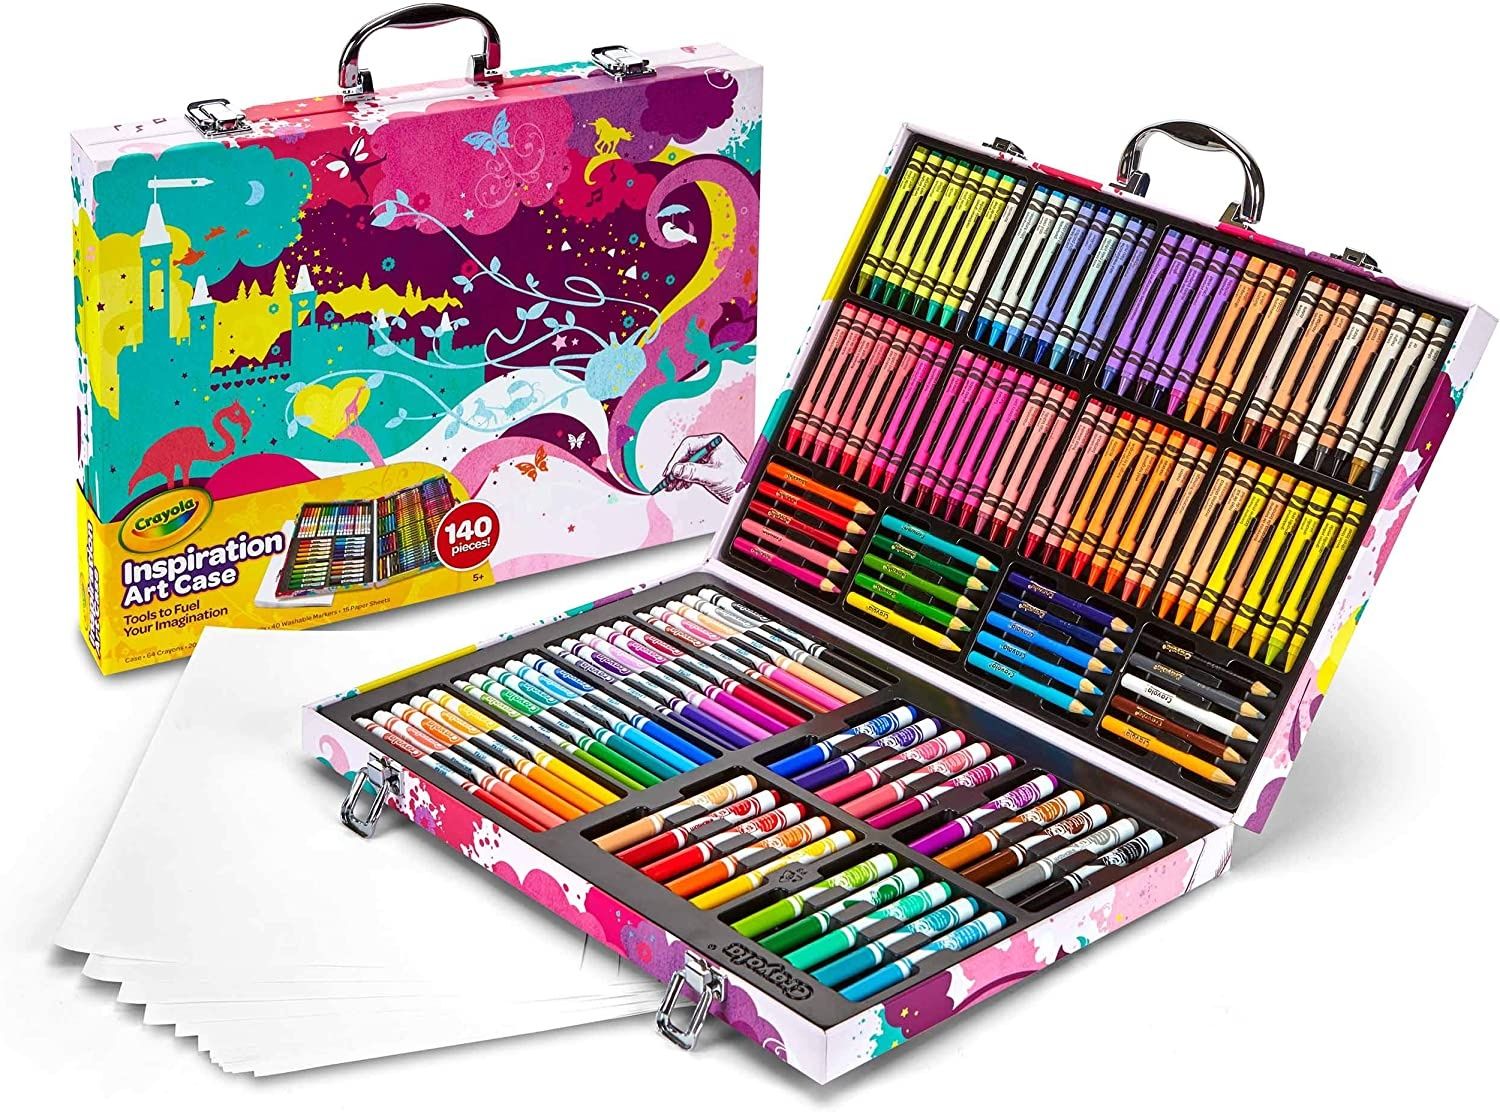 Crayola Inspiration Art 140 предметов чемодан набор для рисован